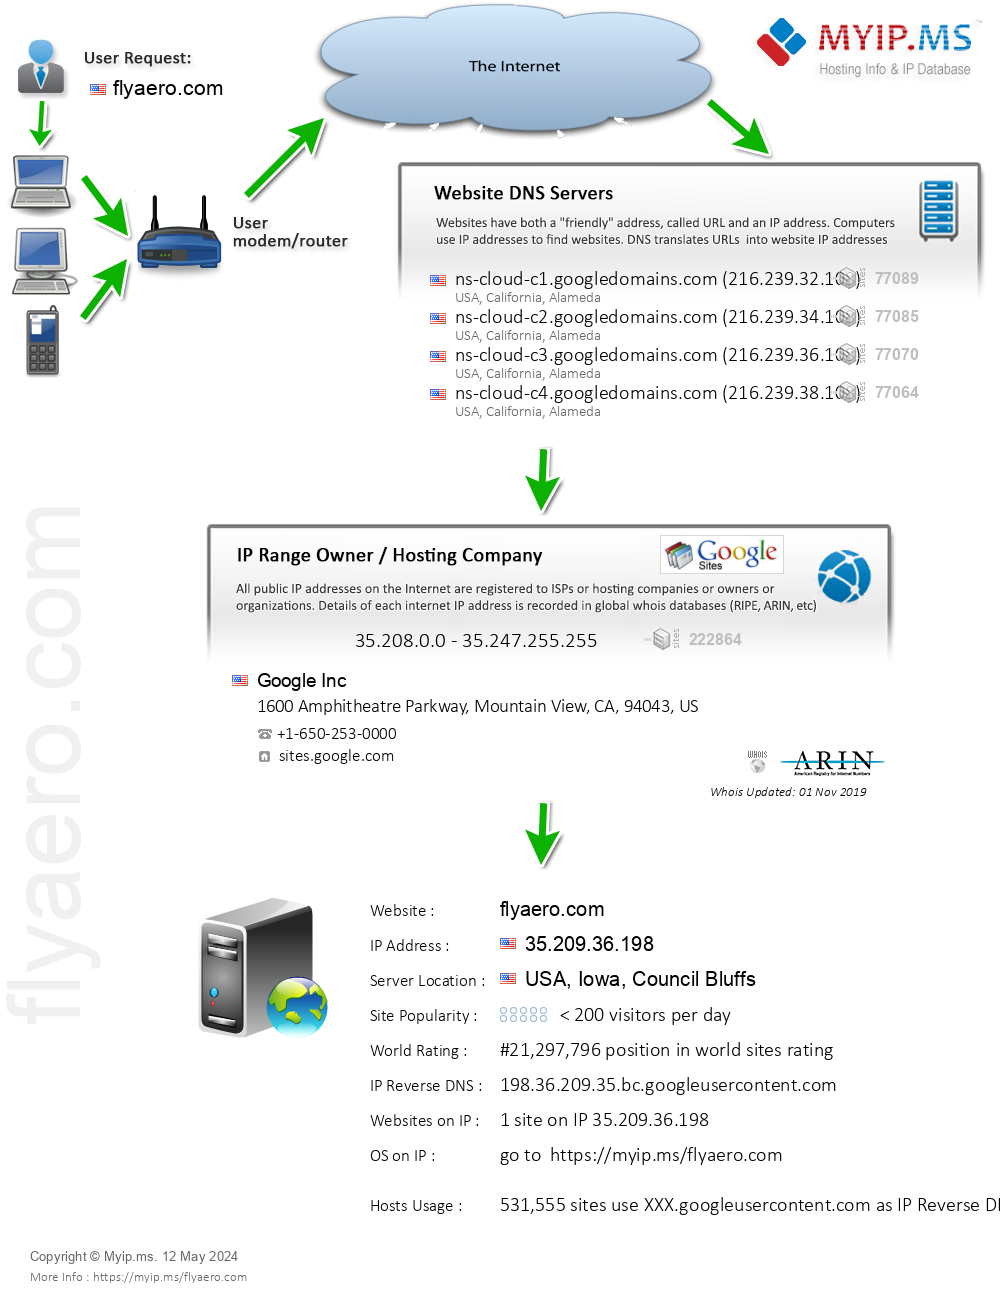 Flyaero.com - Website Hosting Visual IP Diagram